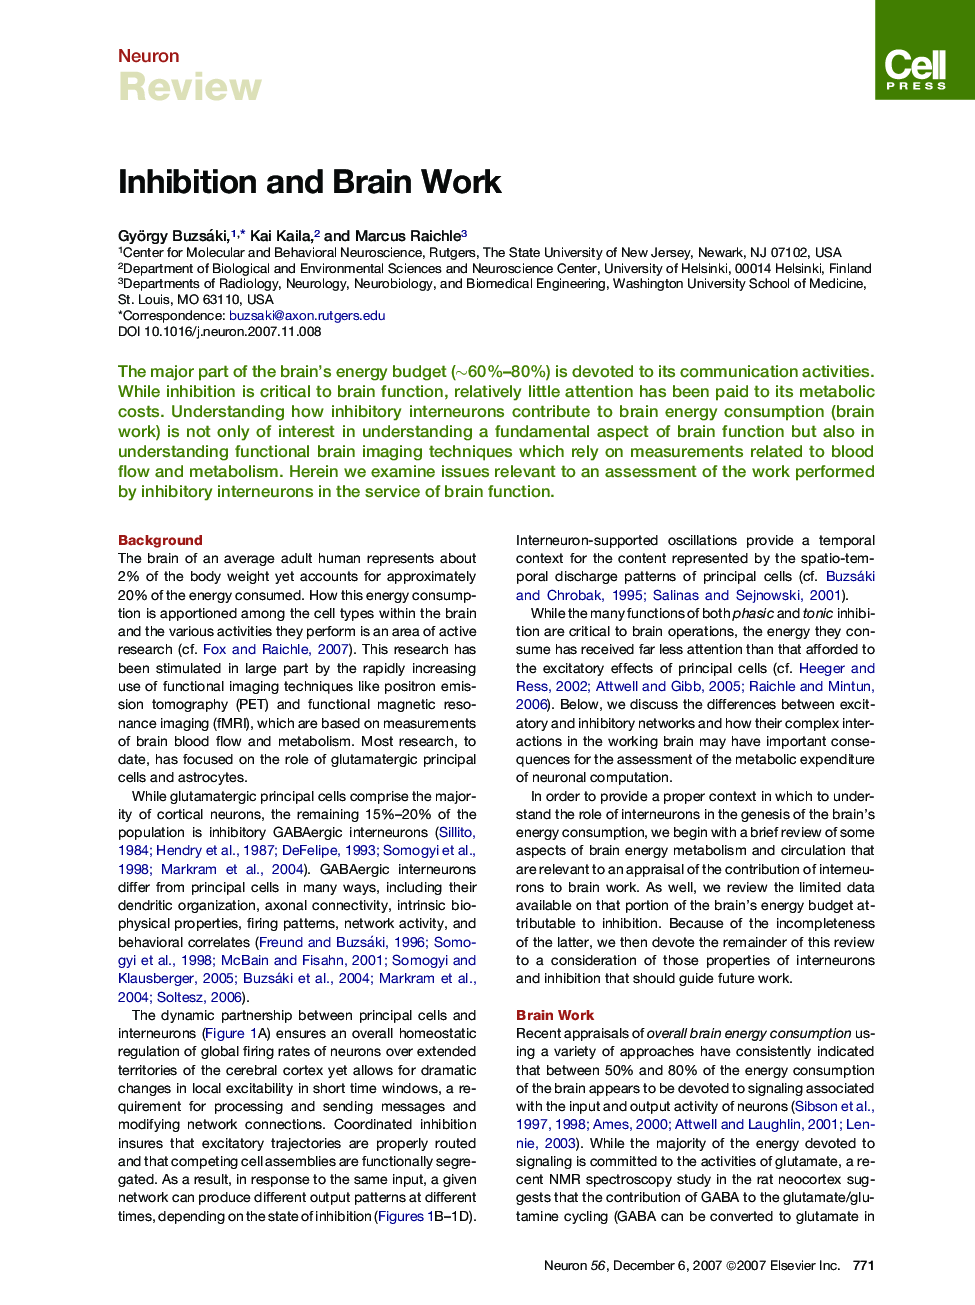 Inhibition and Brain Work